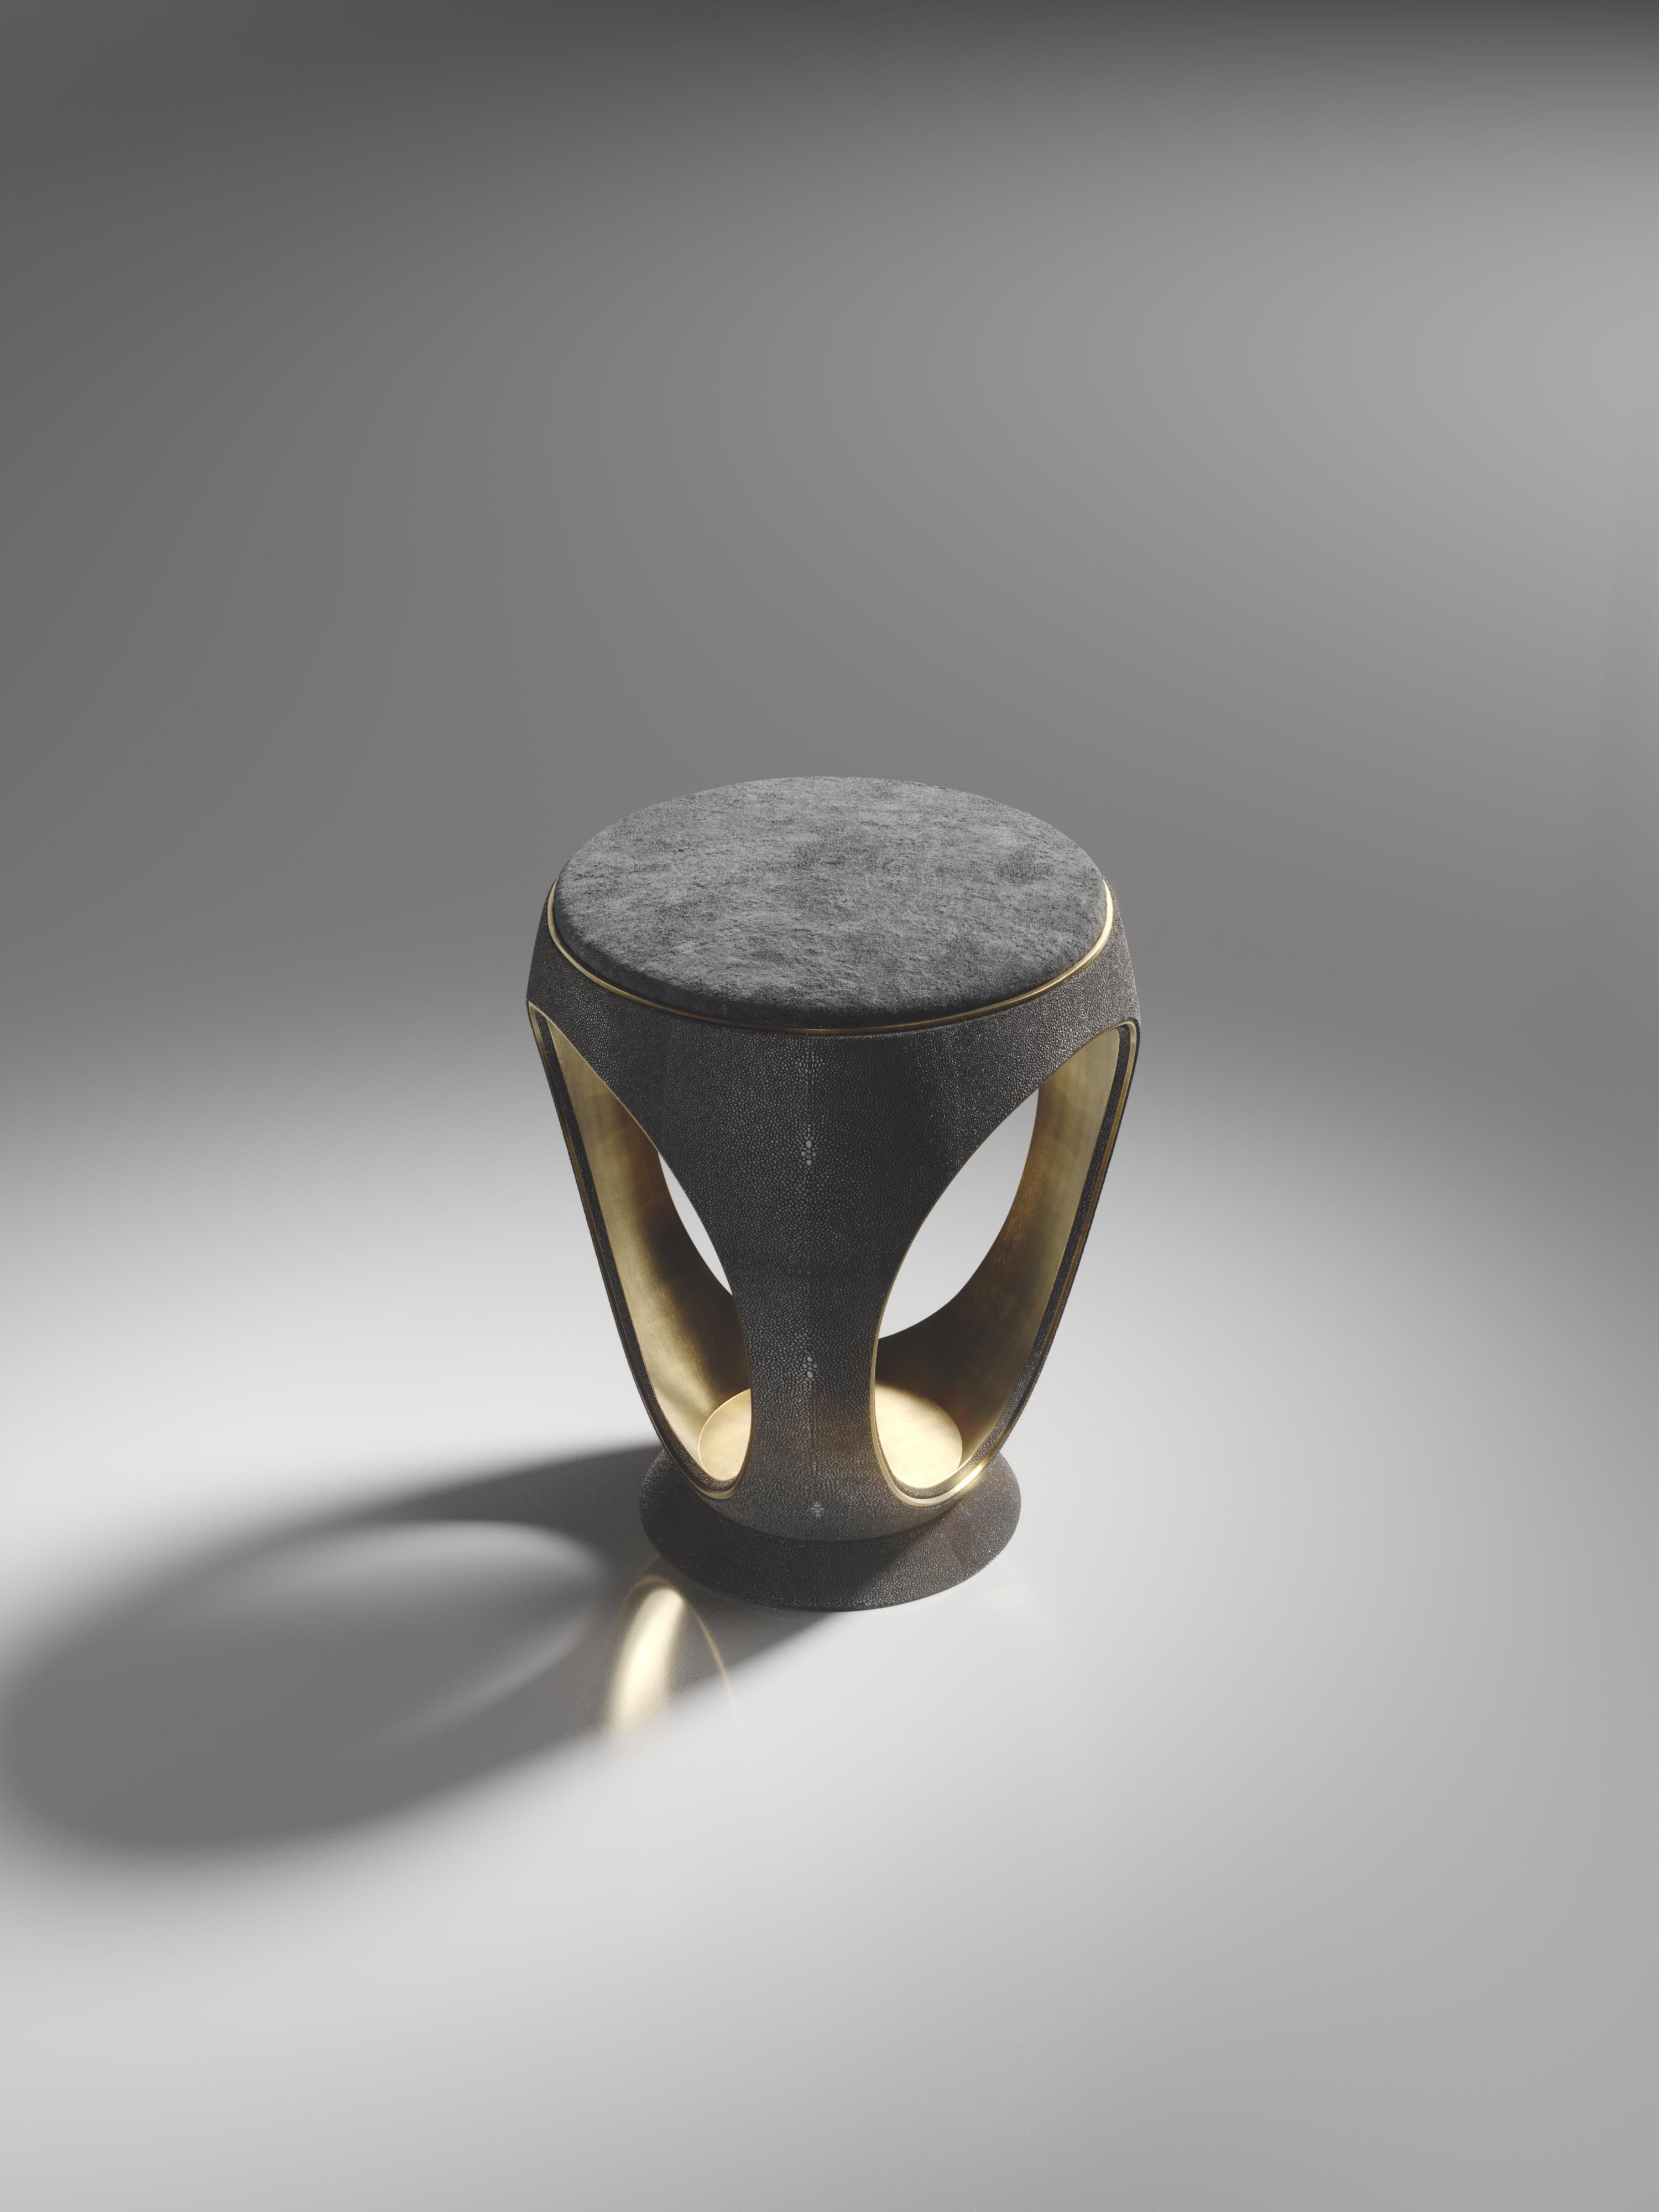 Le tabouret annulaire en galuchat noir est l'une des pièces les plus emblématiques de la Collection R&Y Augousti. De forme sculpturale, semblable à un bijou, cette pièce a été relookée avec un discret détail d'indentation en laiton patiné bronze à